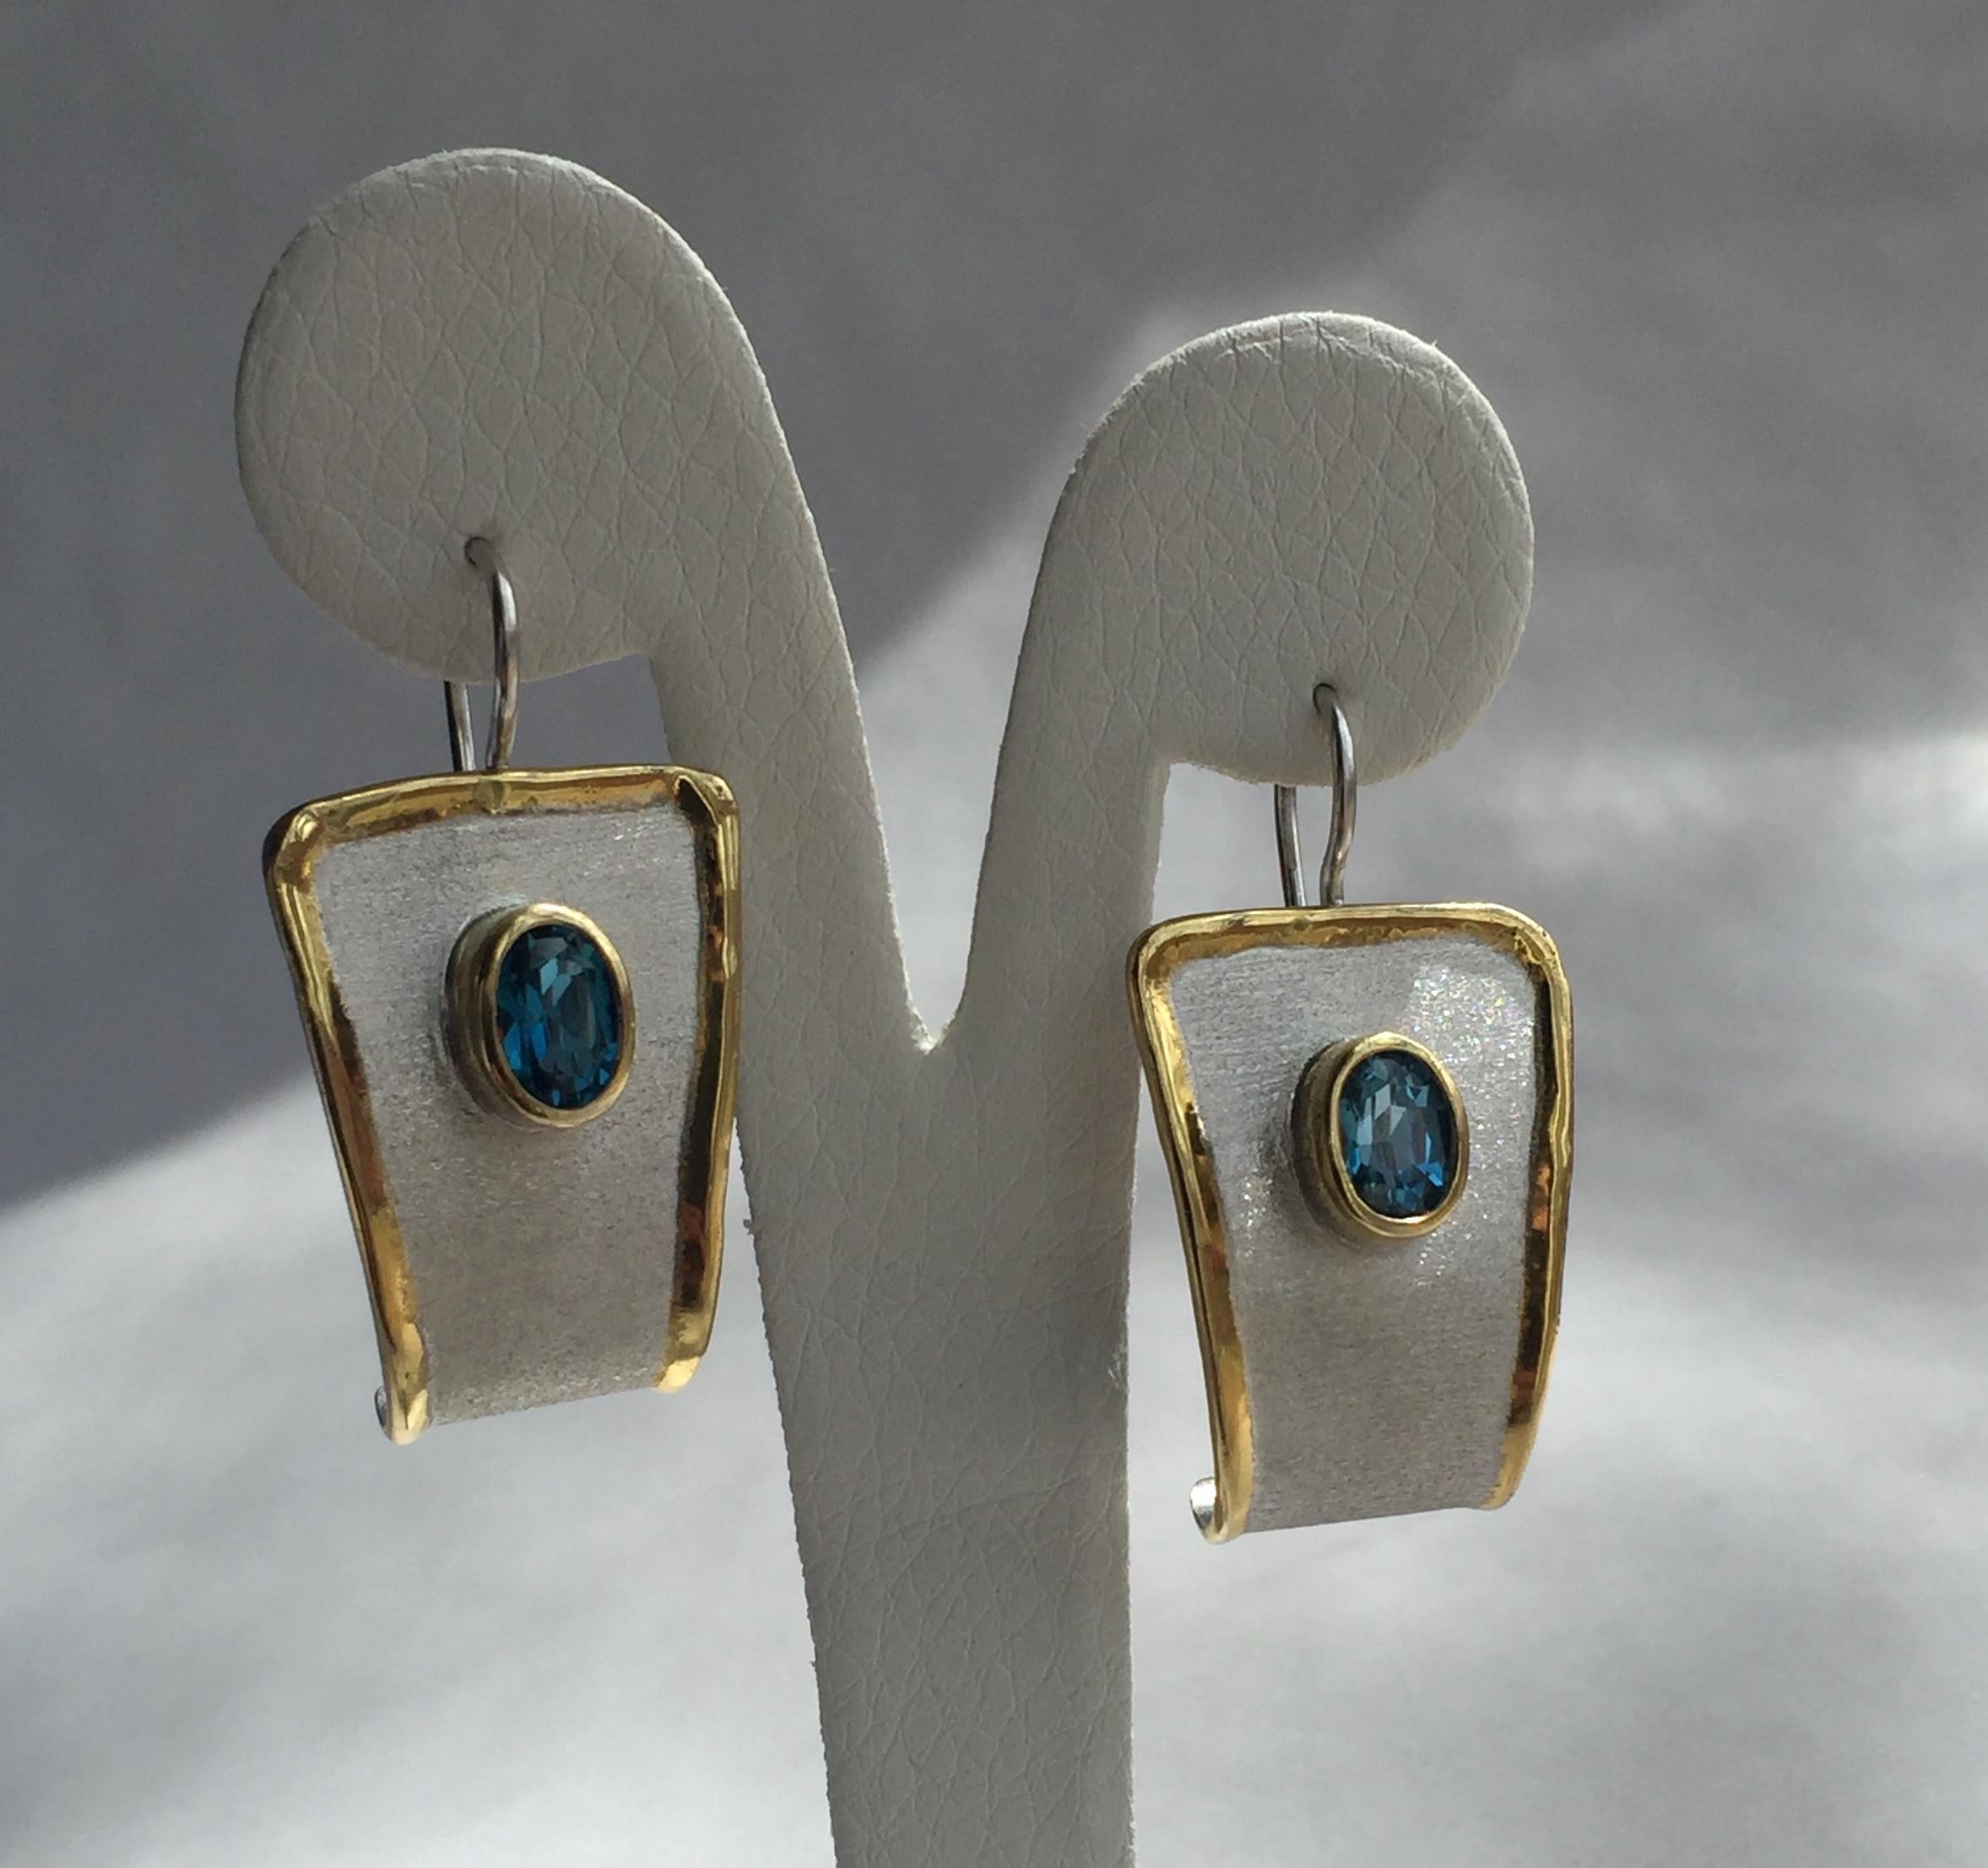 Yianni Creations Midas Collection Boucles d'oreilles pendantes en argent fin 100% fait main par des artisans. Chaque boucle d'oreille est ornée d'une topaze bleue de Londres de 1,60 carat à taille ovale, complétée par des techniques artisanales